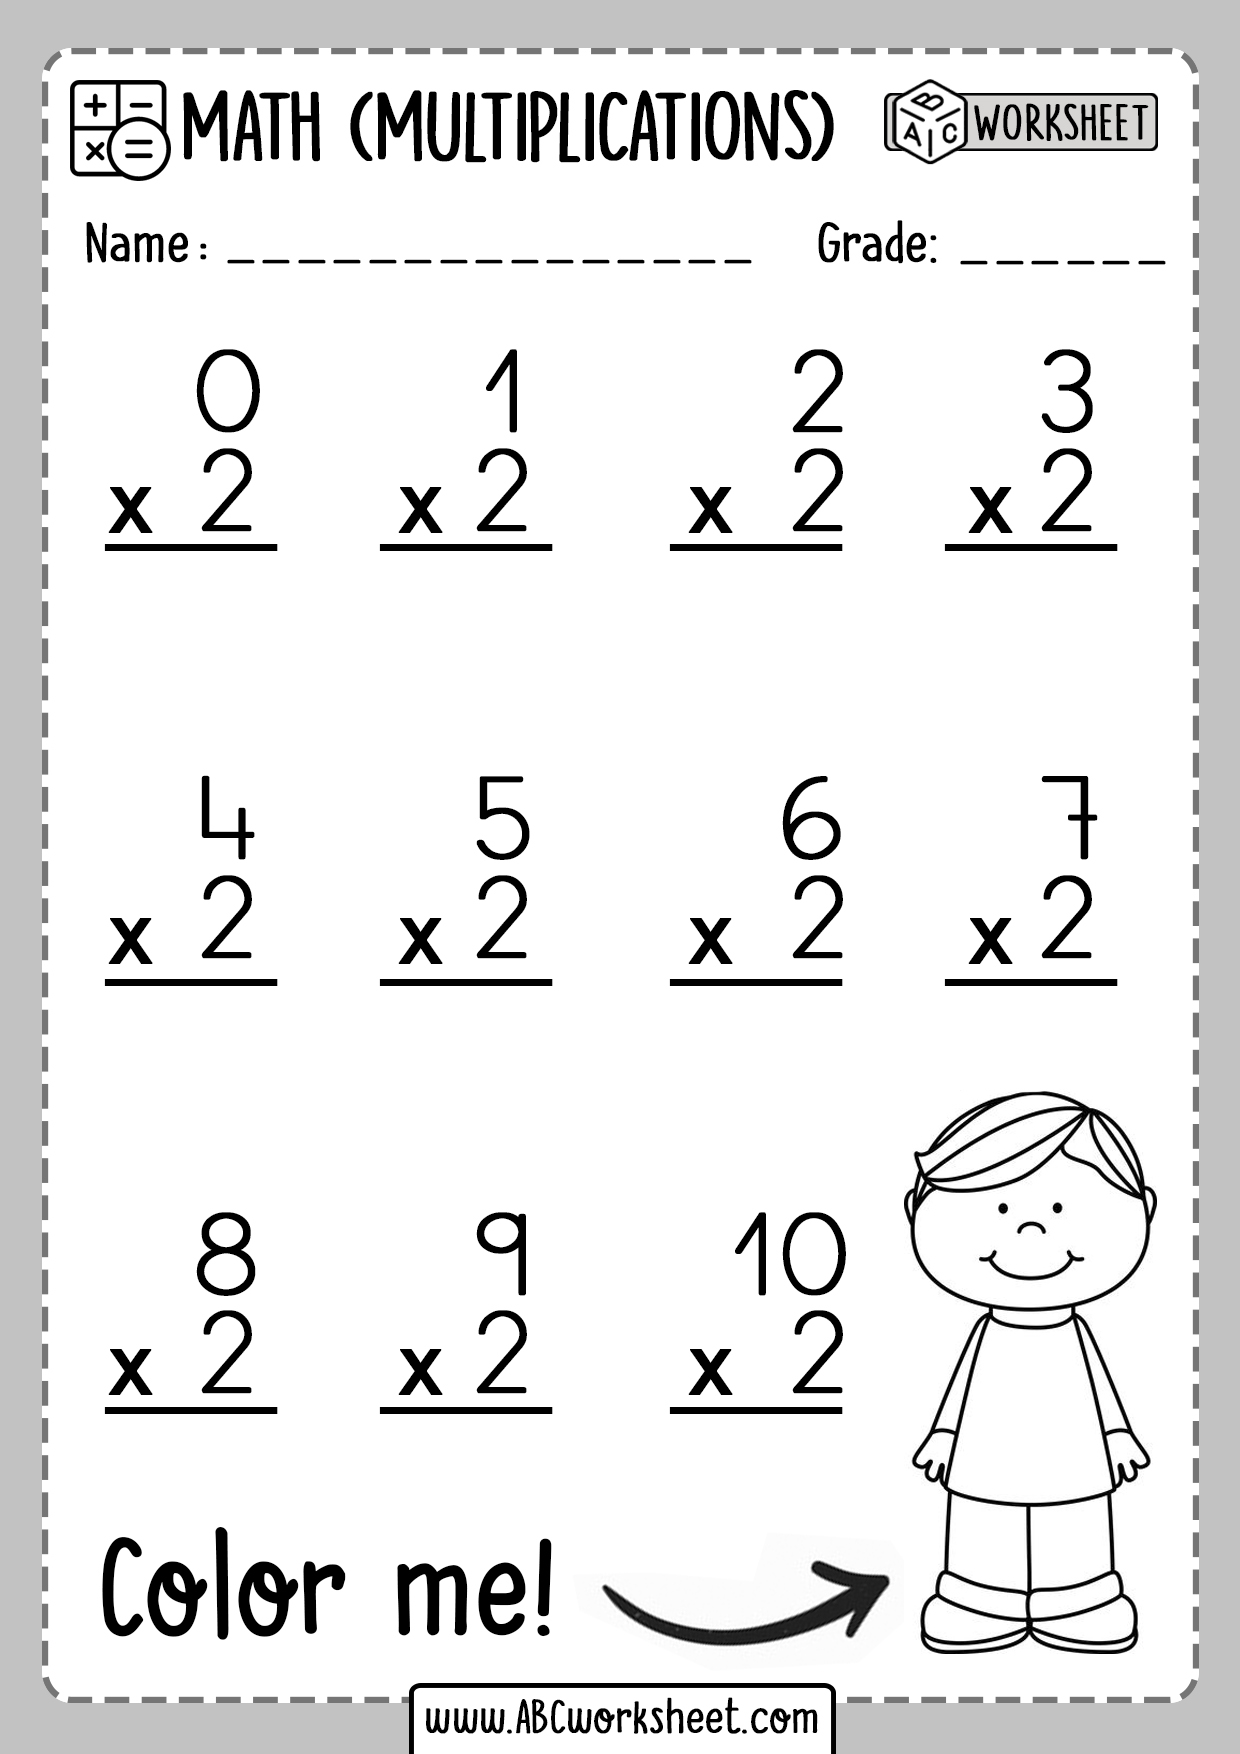 multiplication-worksheet-free-printable